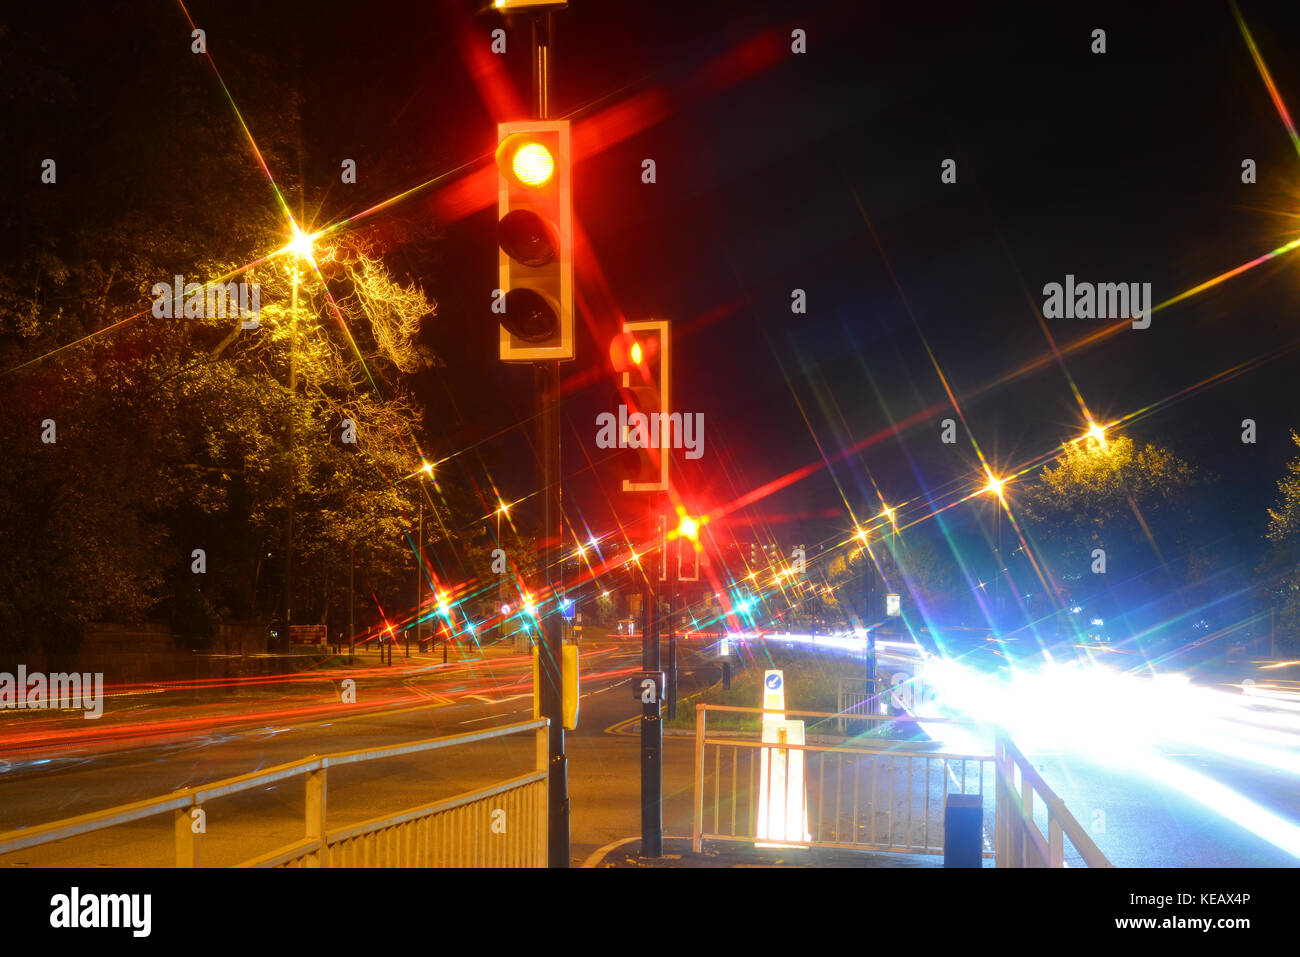 El tiempo de exposición semáforo rojo de parada de noche Leeds, Reino Unido Foto de stock